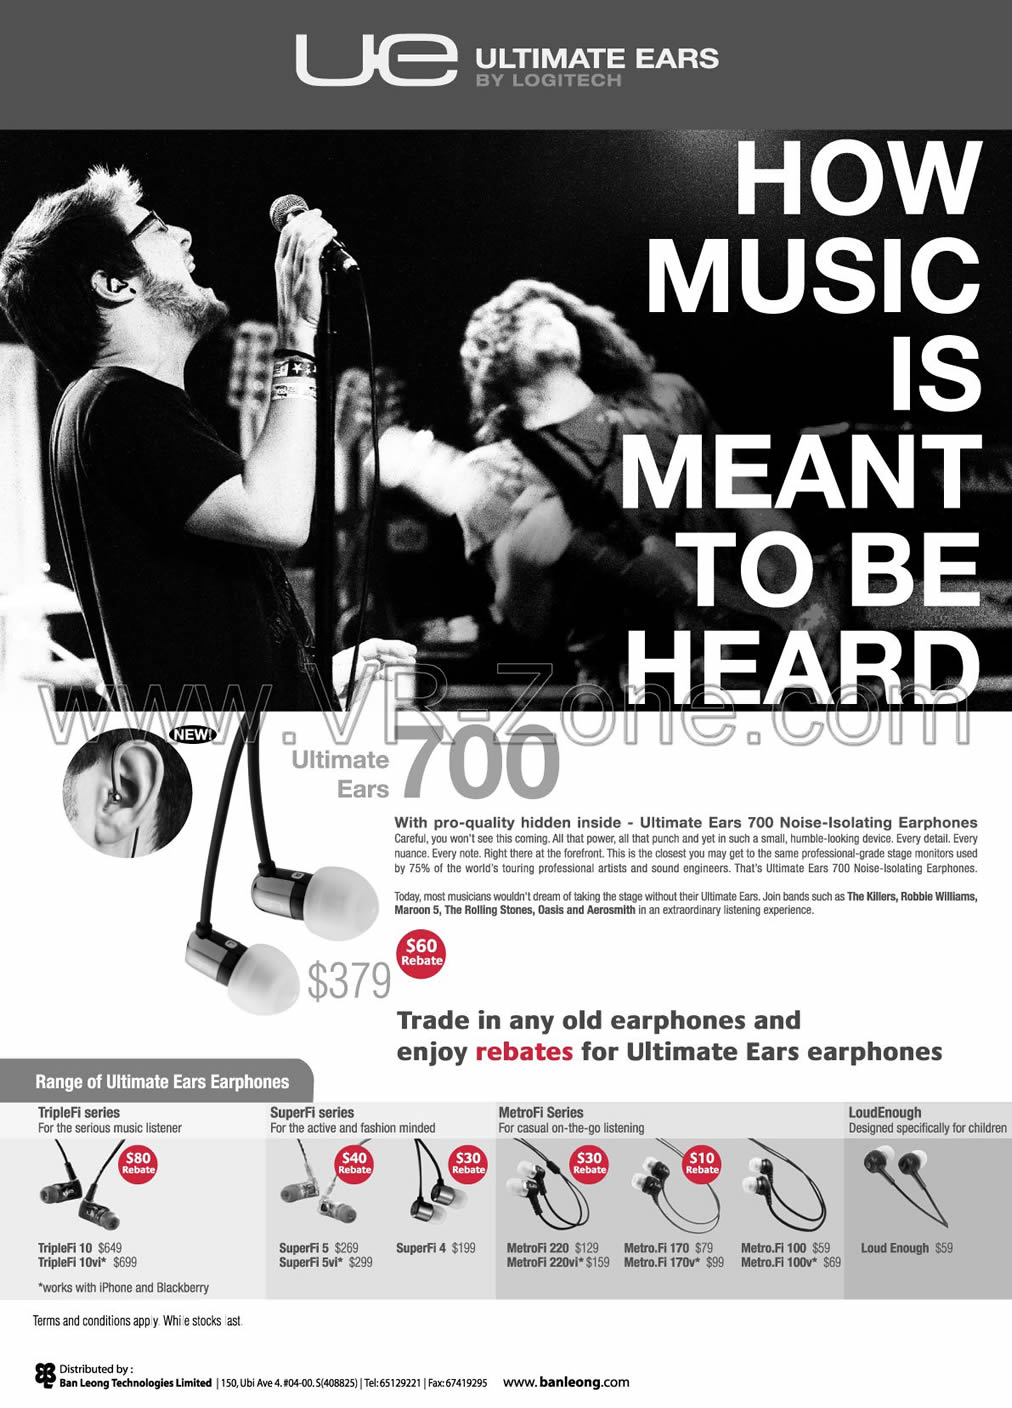 Sitex 2009 price list image brochure of Logitech Ultimate Ears TripleFi SuperFi MetroFi LoudEnough